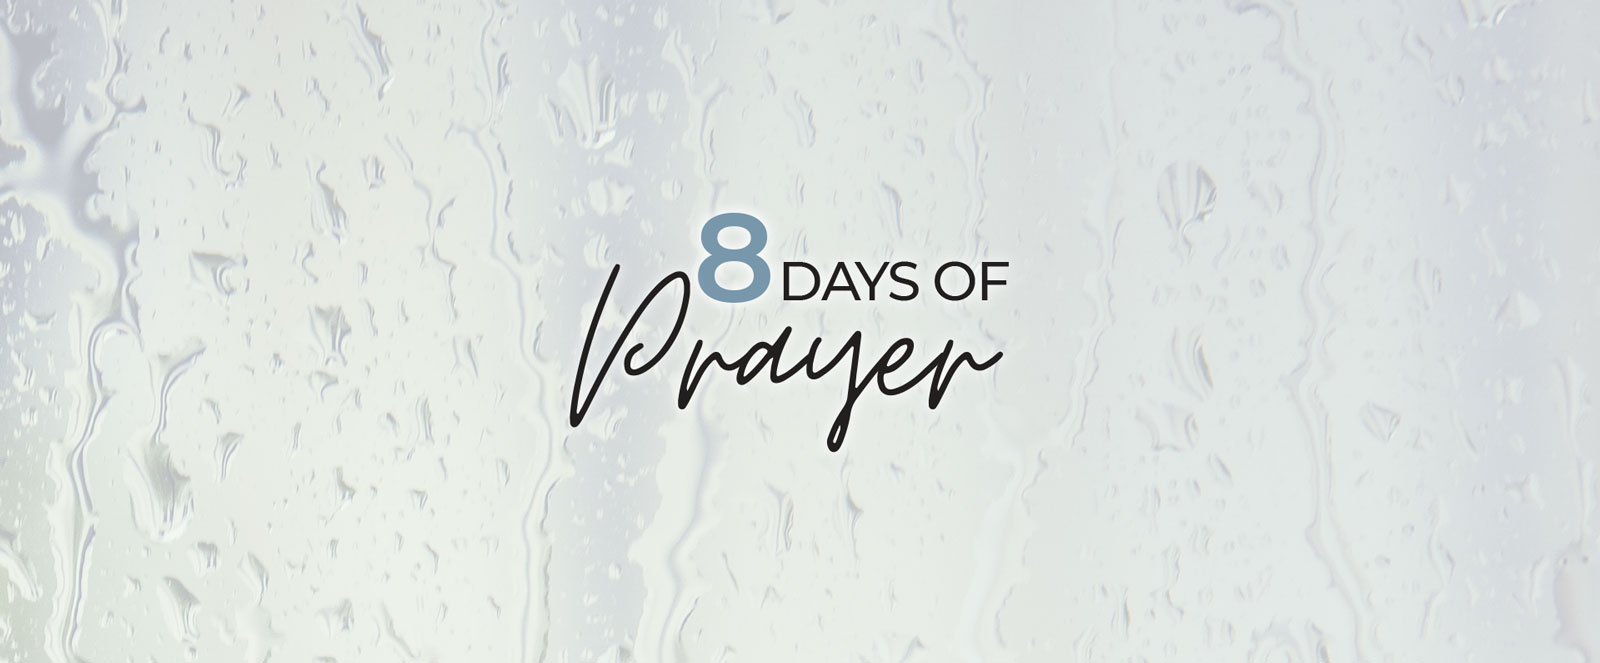 8 Days of Prayer